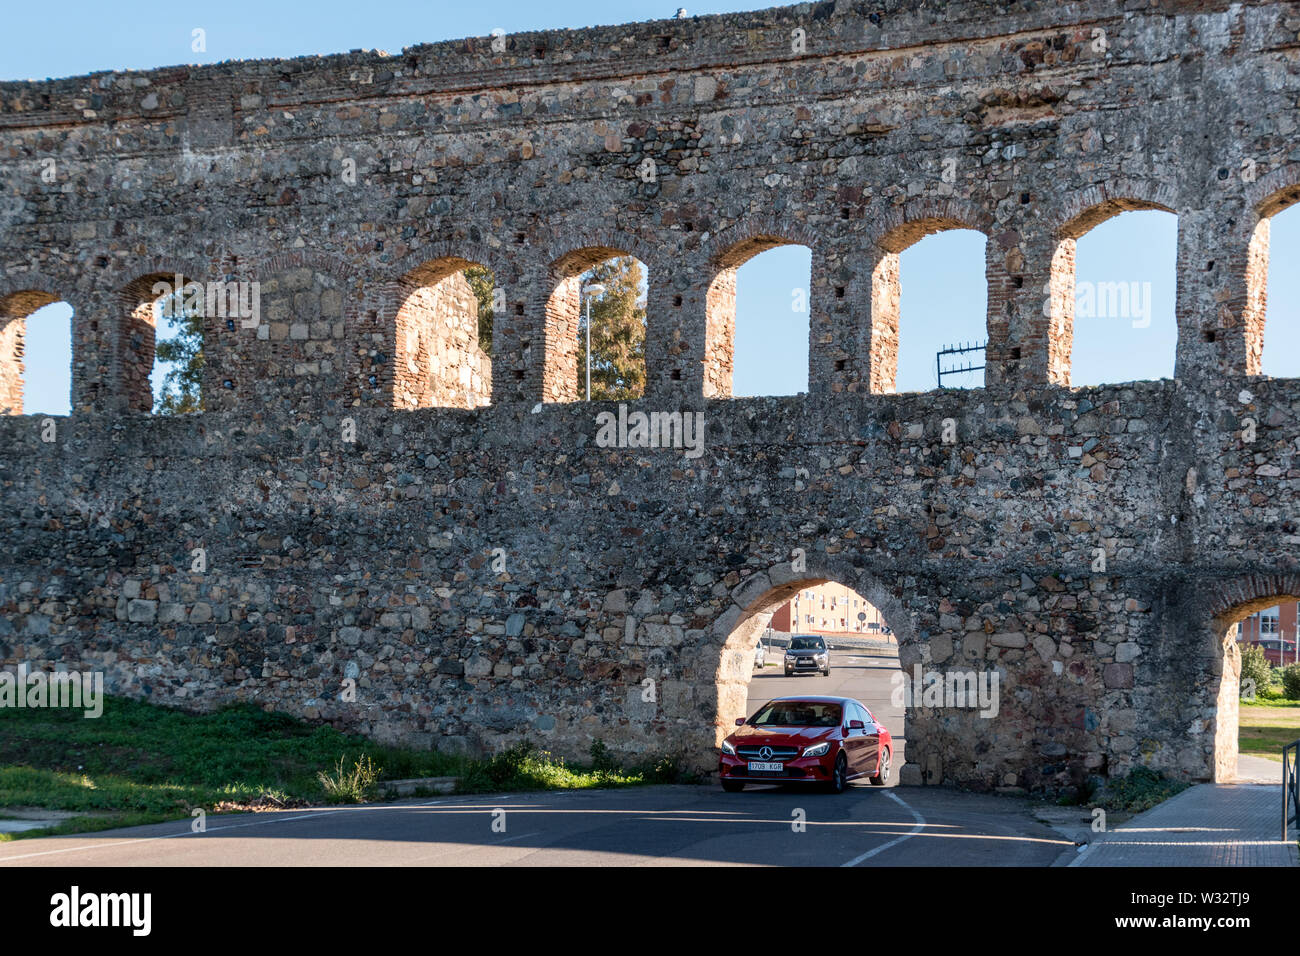 Vieux répond à nouveau : une voiture roulant dans l'Aqueduc de San Lazaro, un ancien aqueduc Romain à Mérida, Espagne Banque D'Images